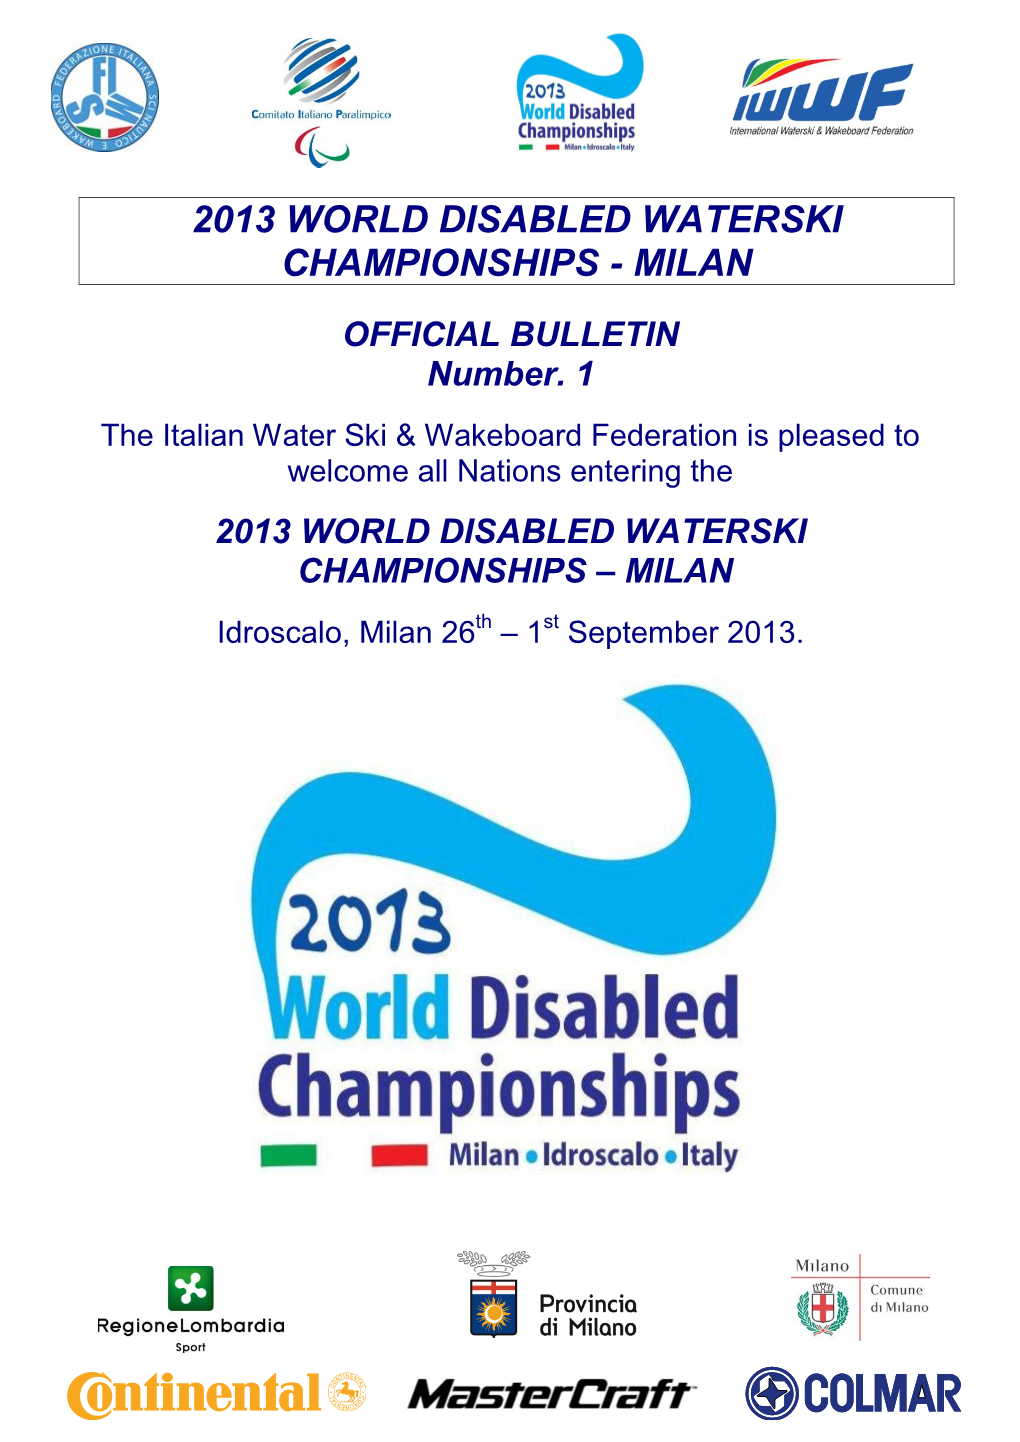 2013 World Disabled Waterski Championships - Milan